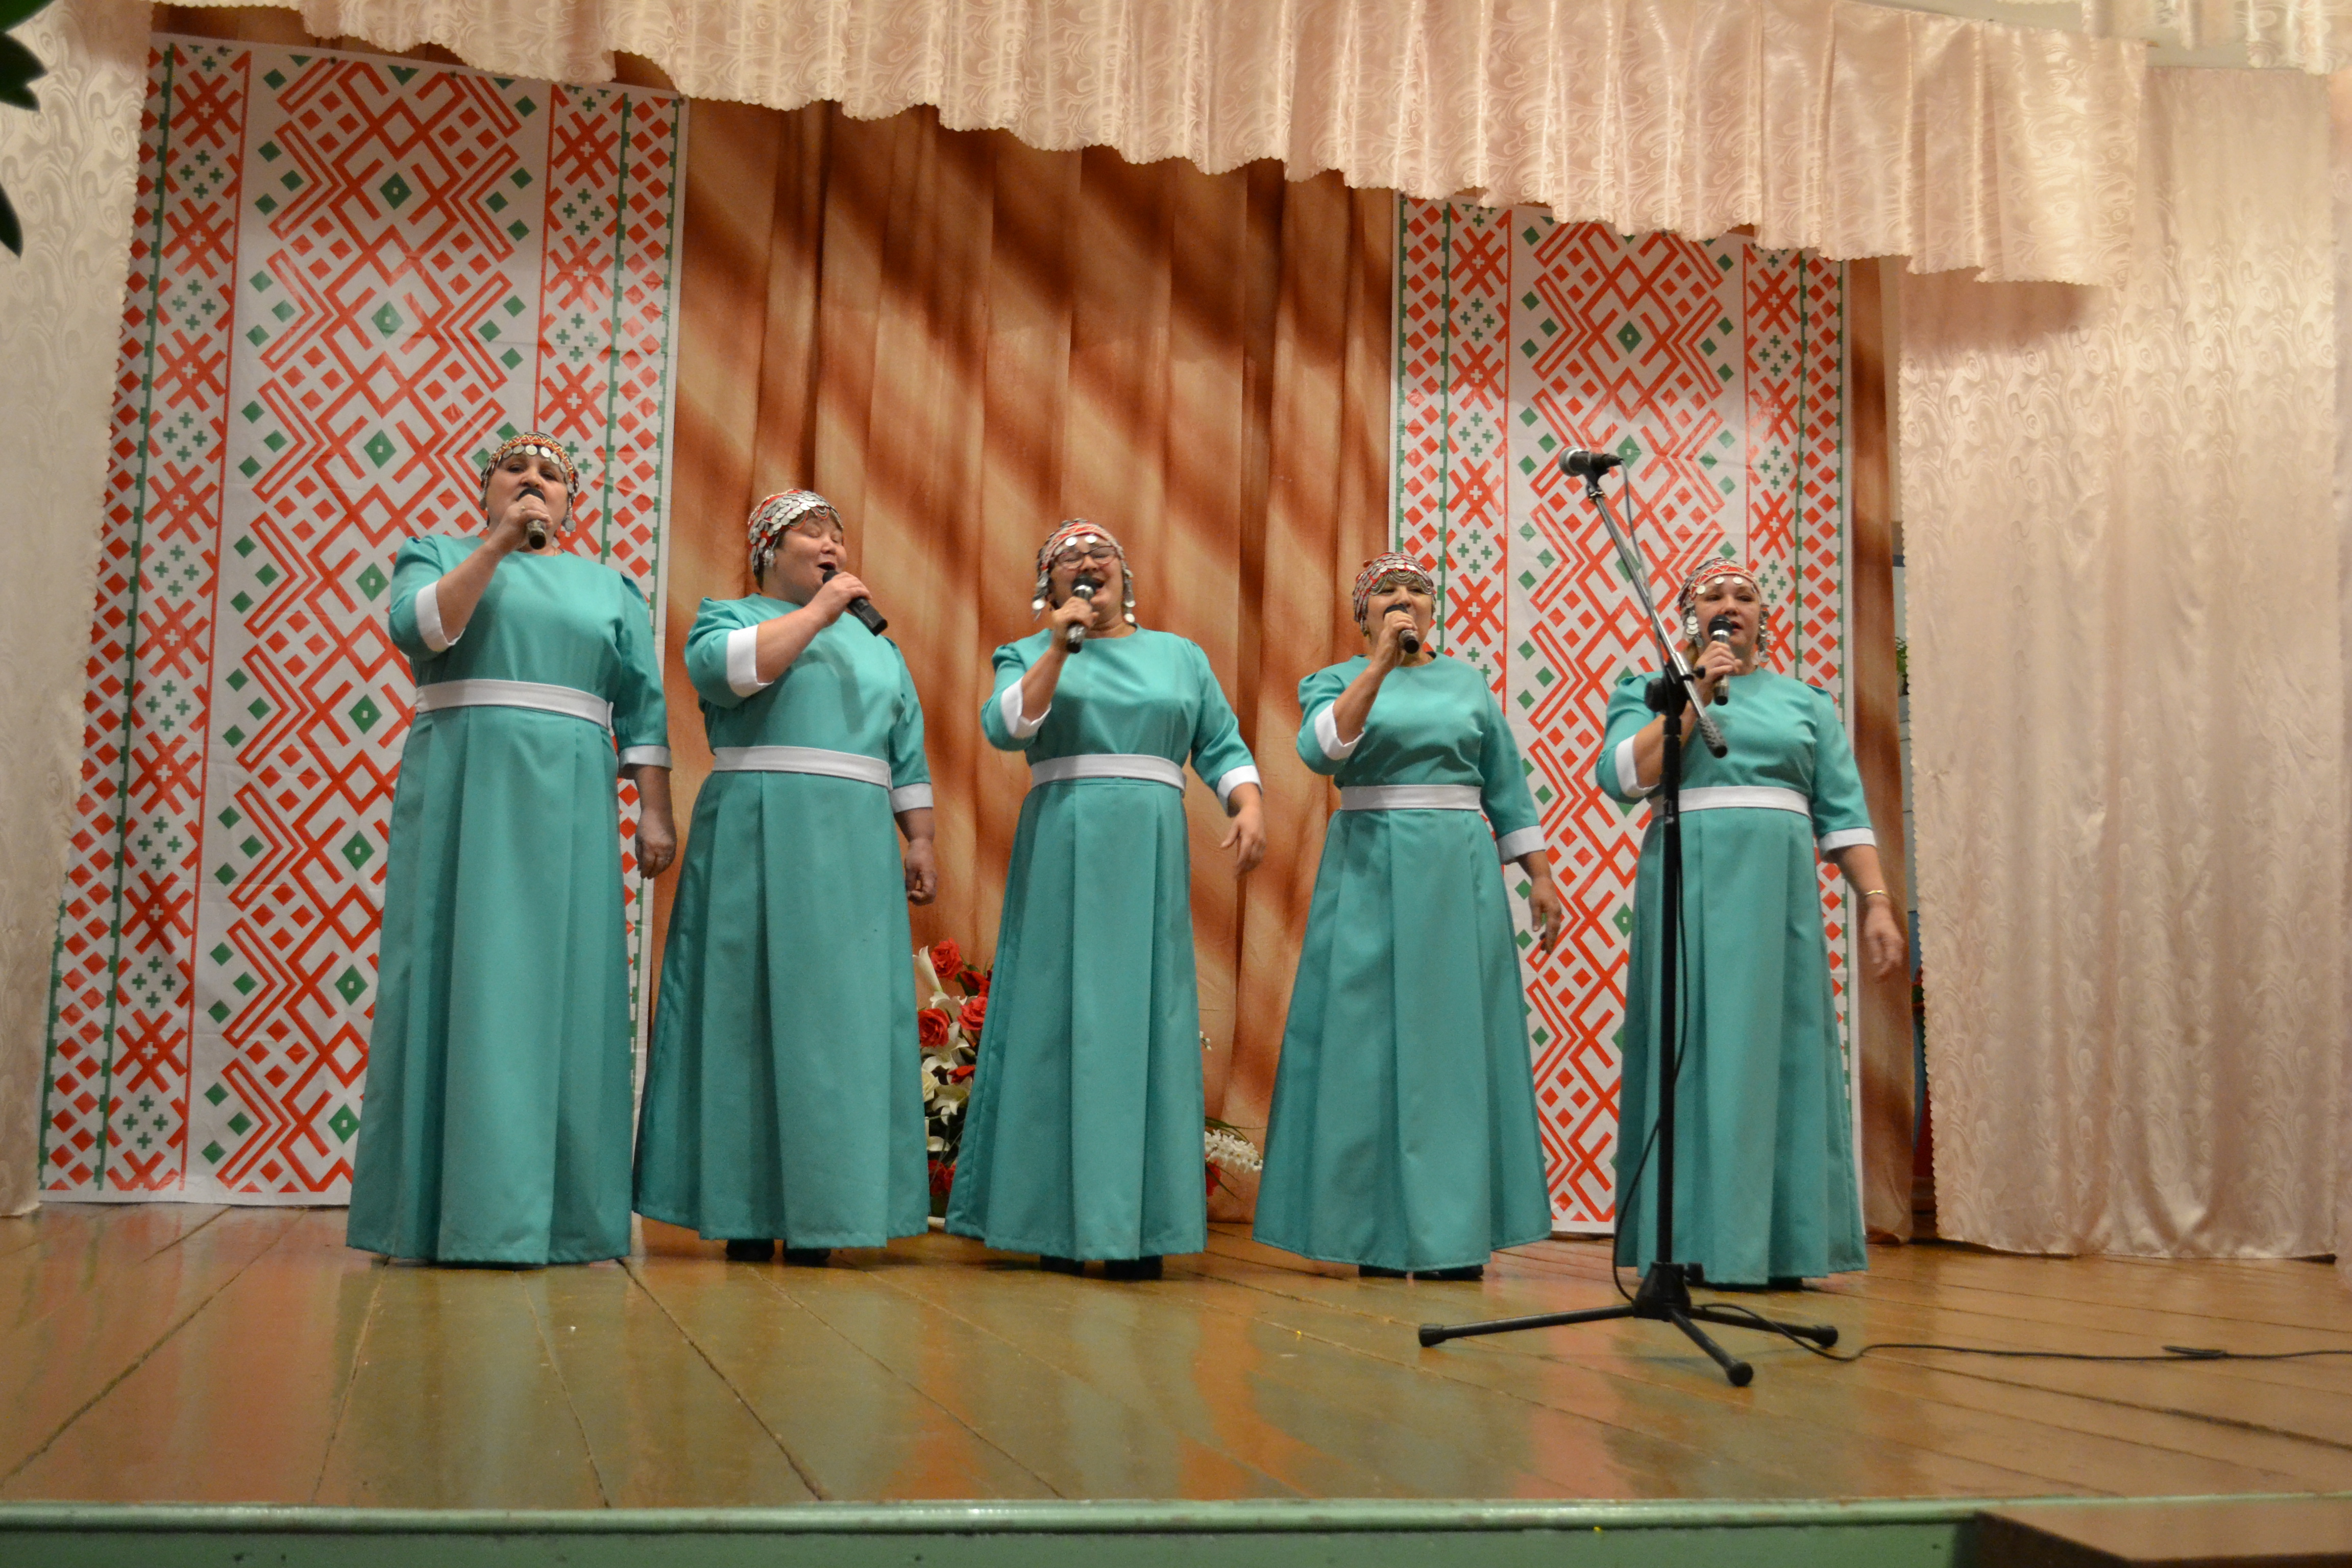 Сохранить и преумножить традиции чувашского народа